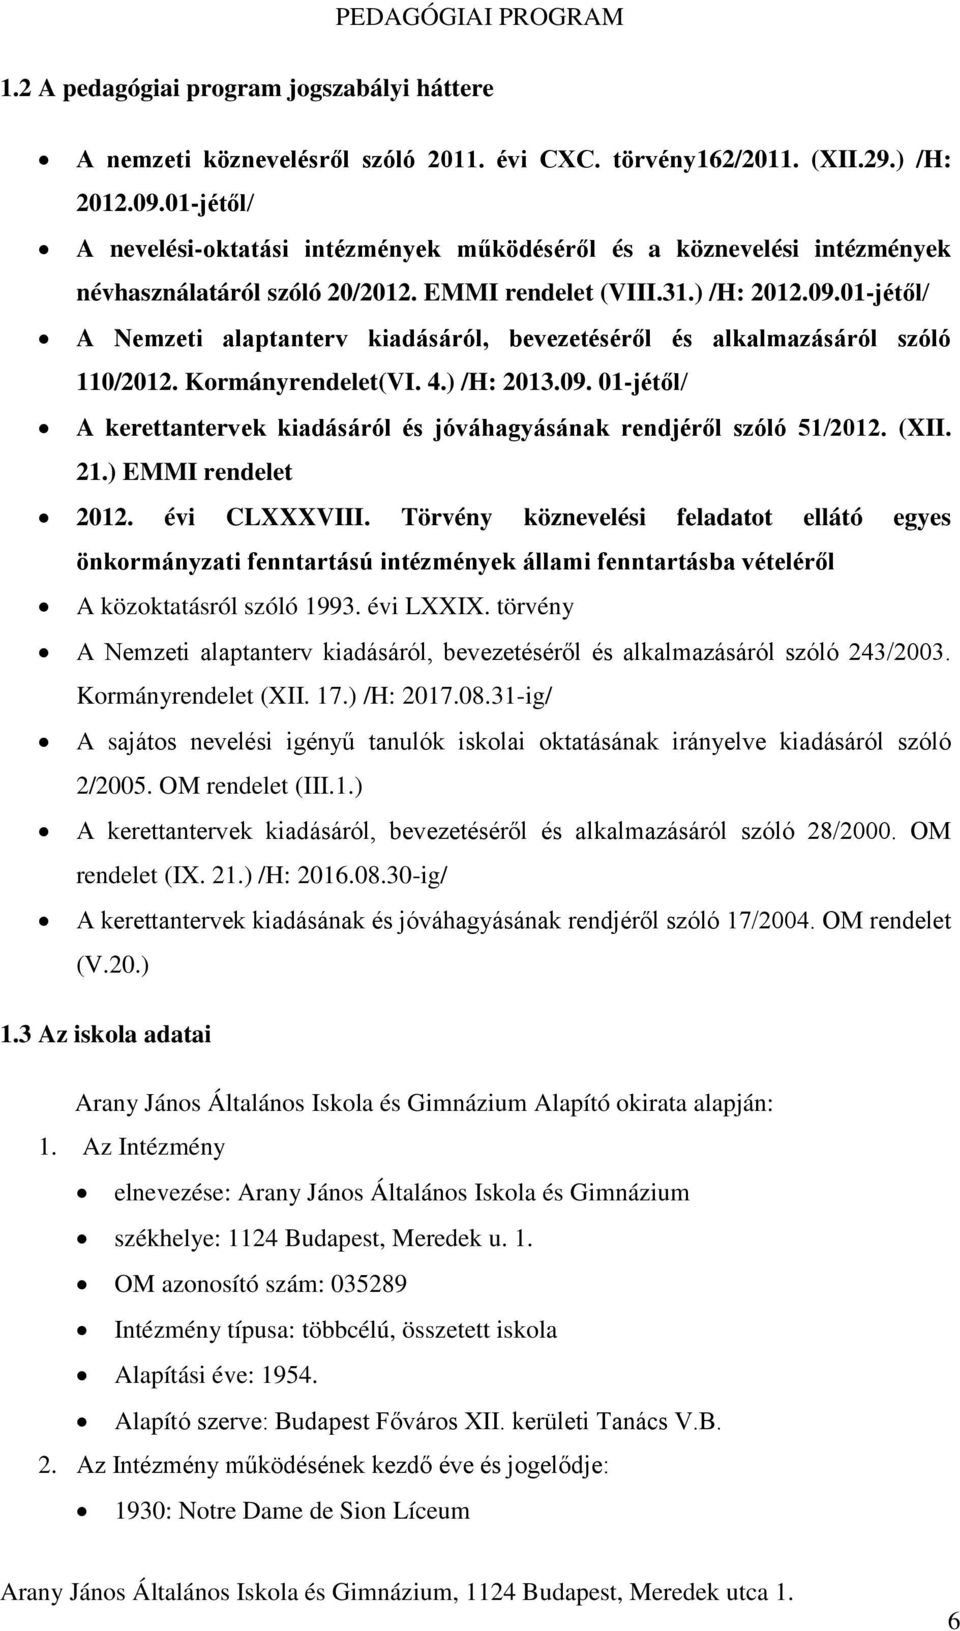 01-jétől/ A Nemzeti alaptanterv kiadásáról, bevezetéséről és alkalmazásáról szóló 110/2012. Kormányrendelet(VI. 4.) /H: 2013.09.